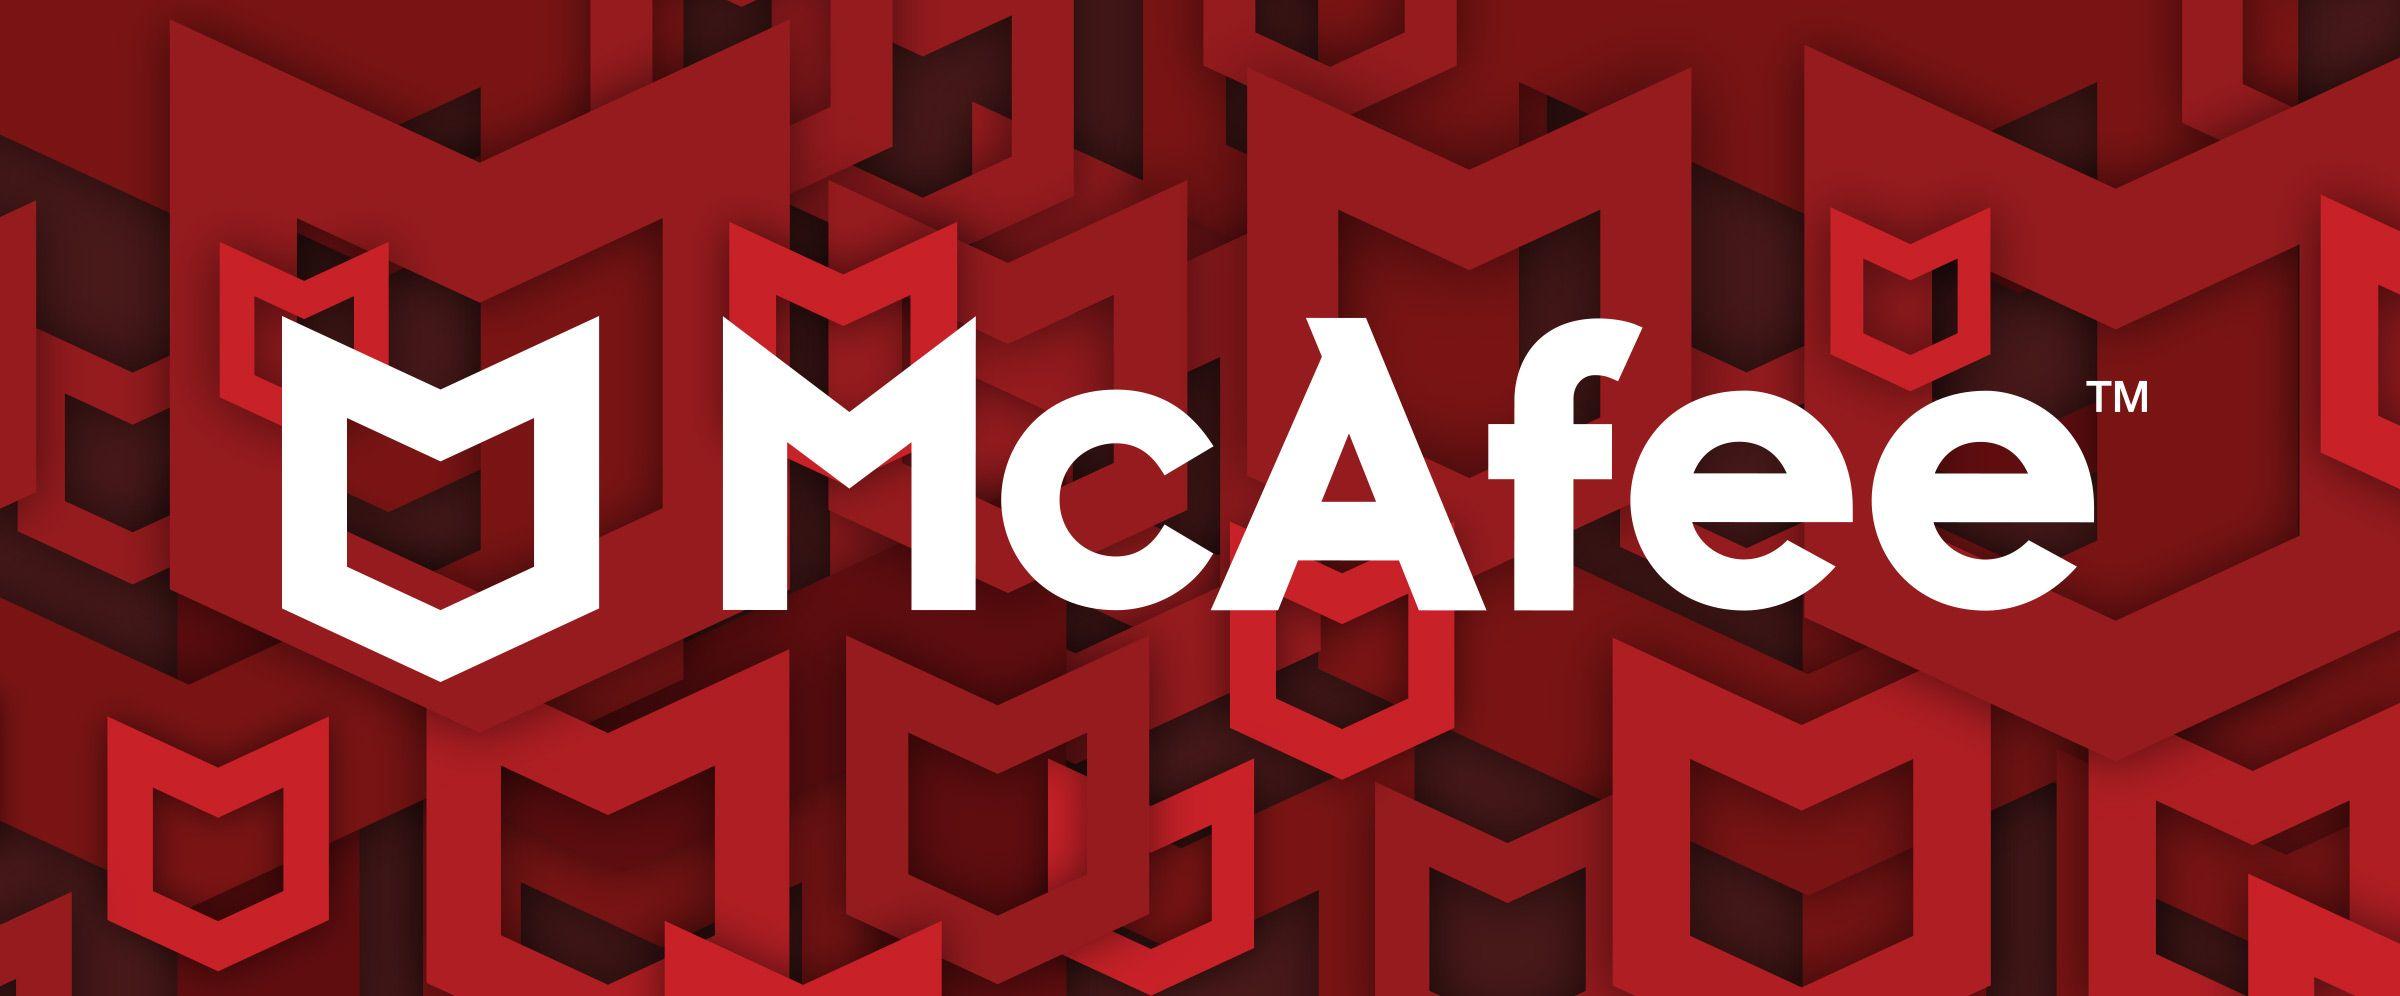 McAfee Logo - McAfee wins a Transform Award